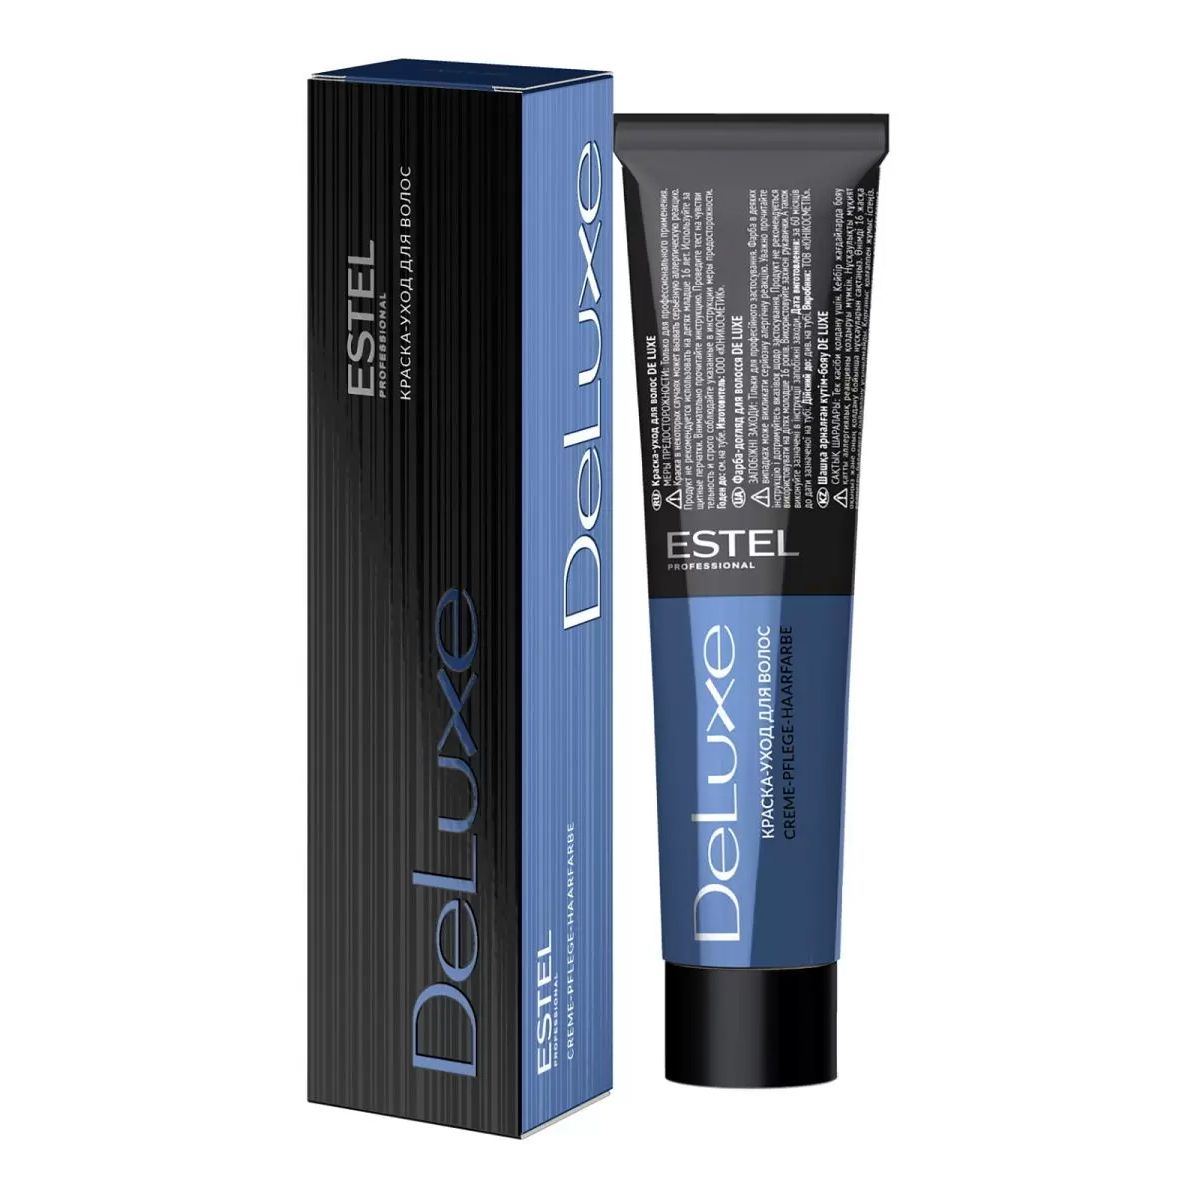 Краска для волос Estel Professional De Luxe 6/3 Темно-русый золотистый 60 мл халат женский махровый 80% хлопок 20% полиэстер темно голубой 46 багира lx 13 005 1